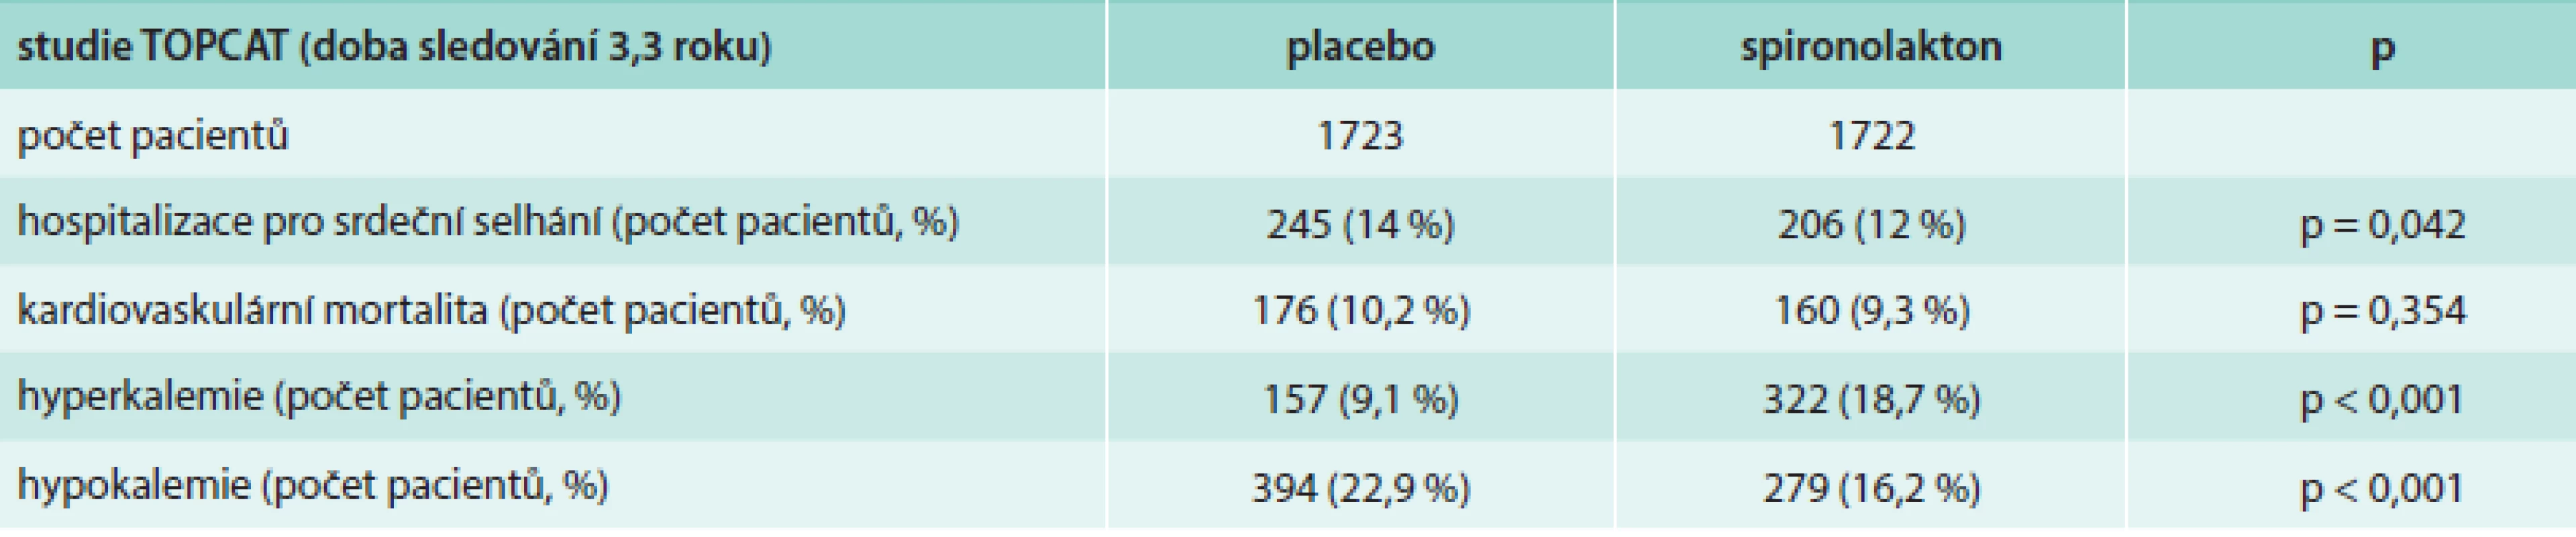 Souhrnné výsledky studie TOPCAT (spironolakton vs placebo)